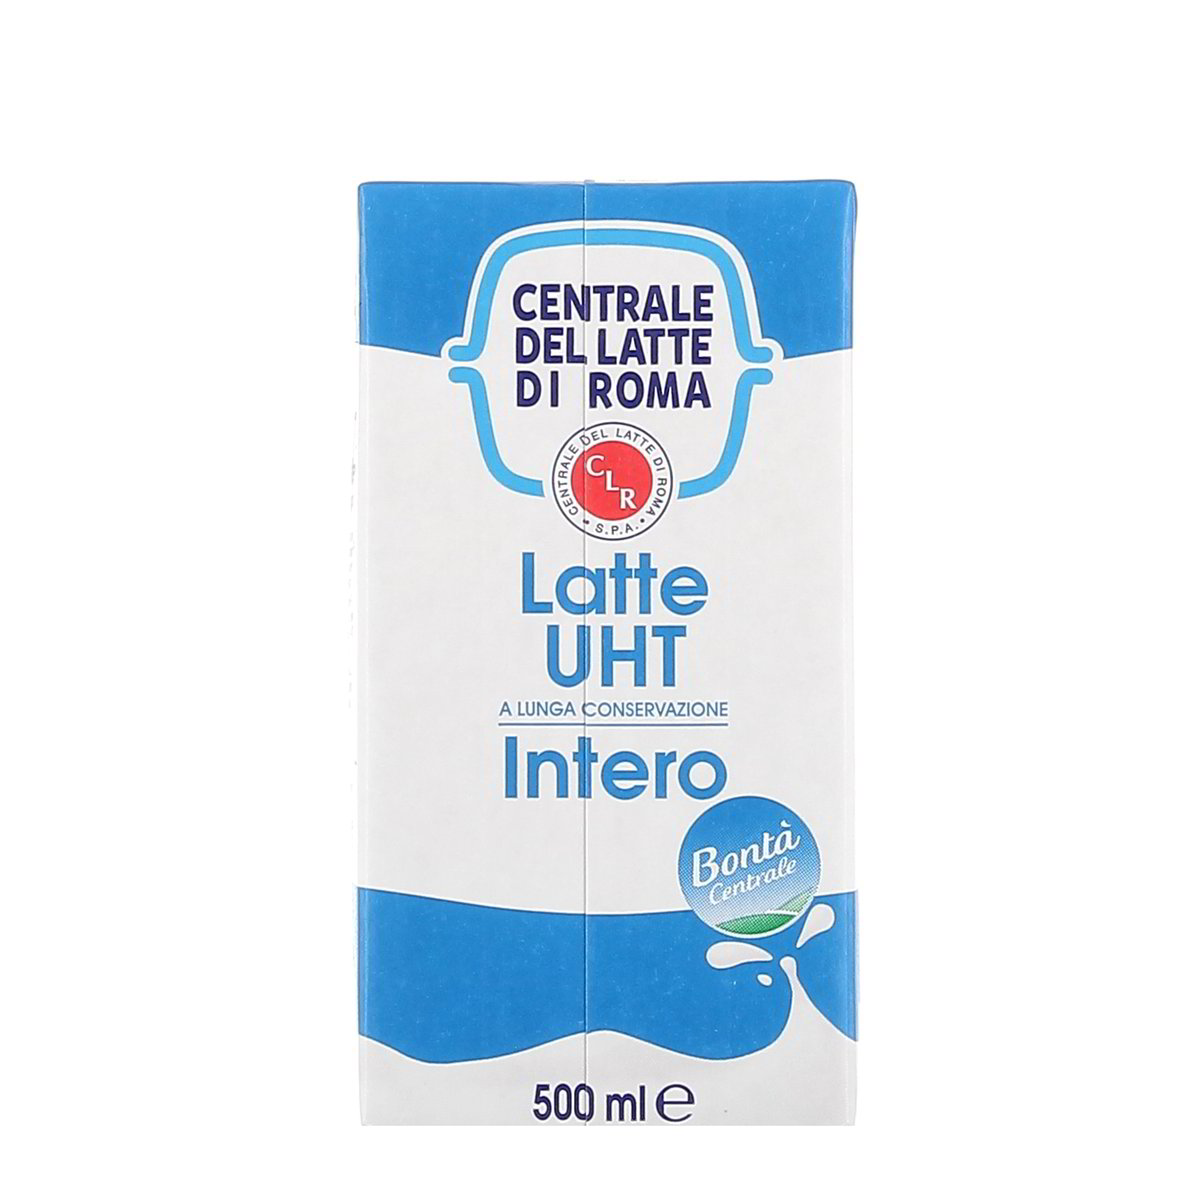 LATTE INTERO UHT CENTRALE DEL LATTE DI ROMA 500 ml in dettaglio